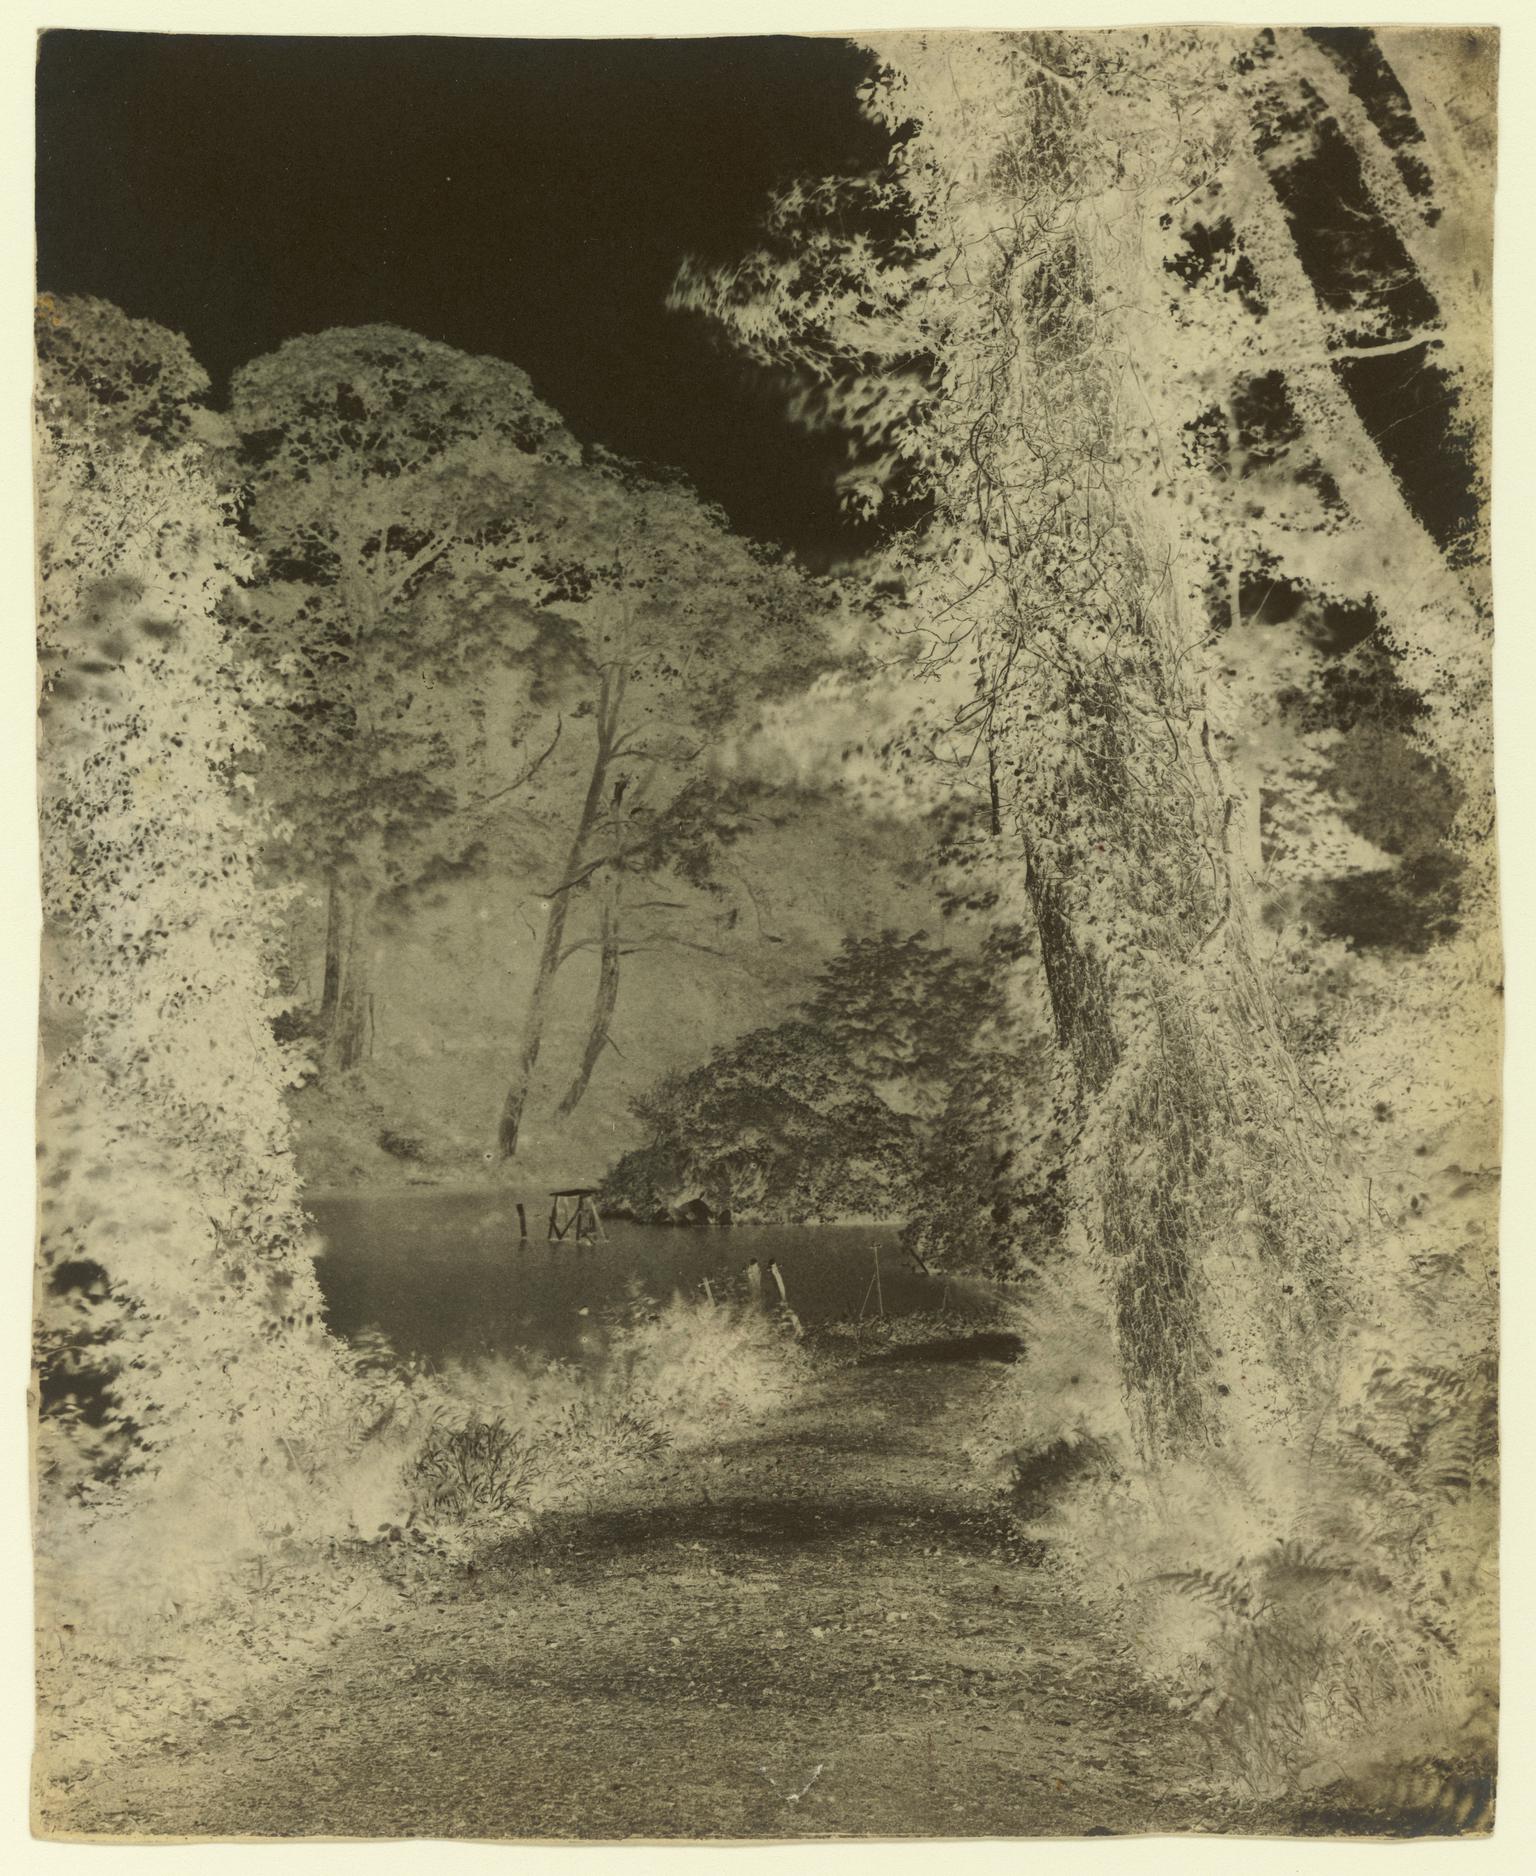 Penllergare, upper lake, paper negative